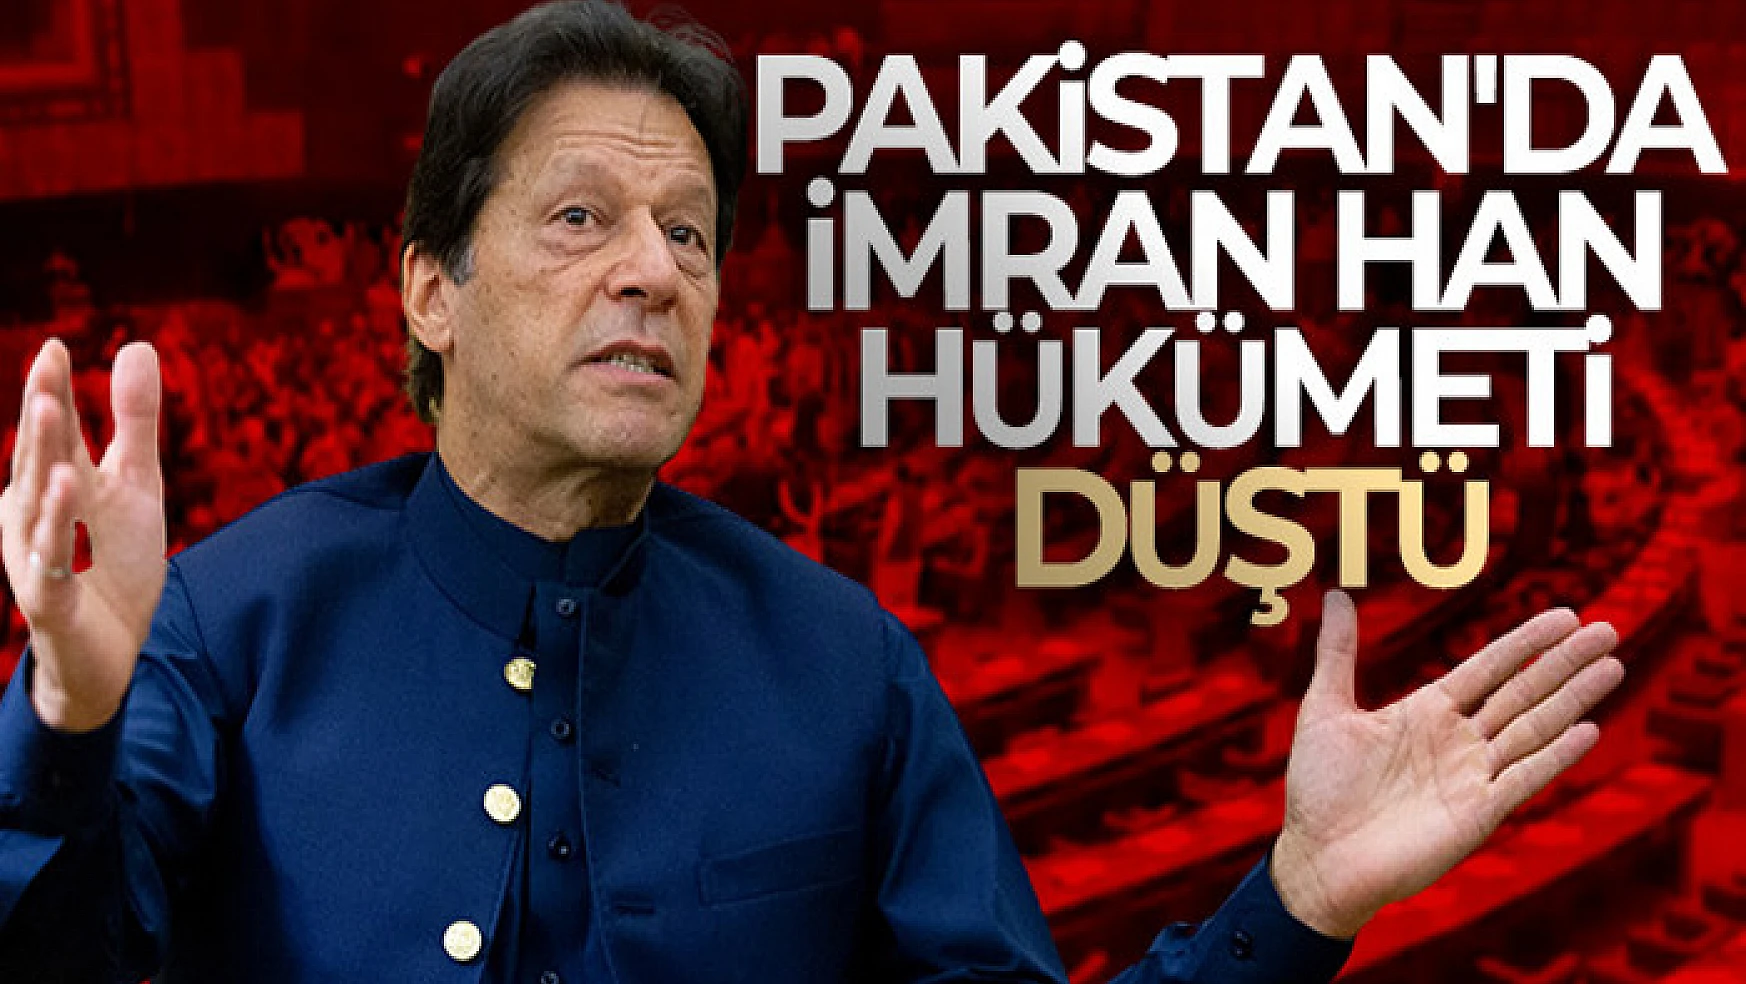 Güven oylamasını kaybeden Pakistan Başbakanı Imran Khan görevden alındı